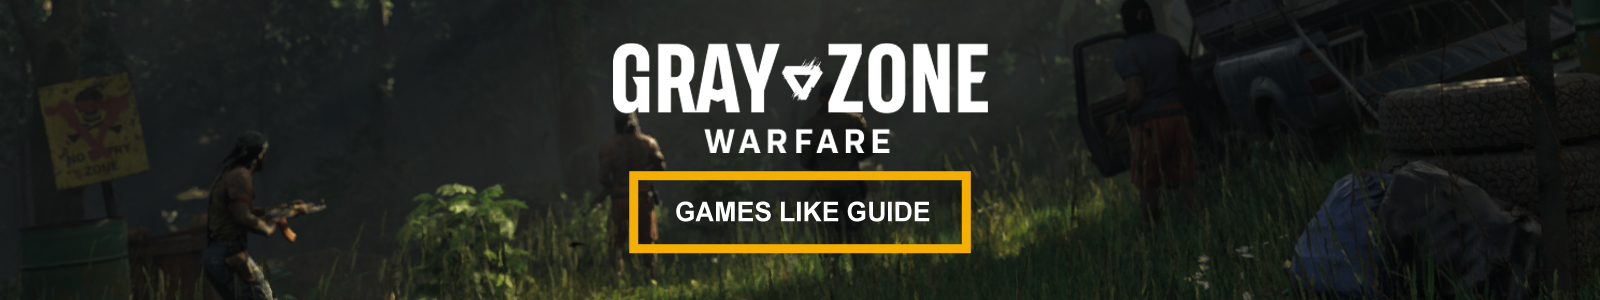 Guía de juegos similares a Gray Zone Warfare